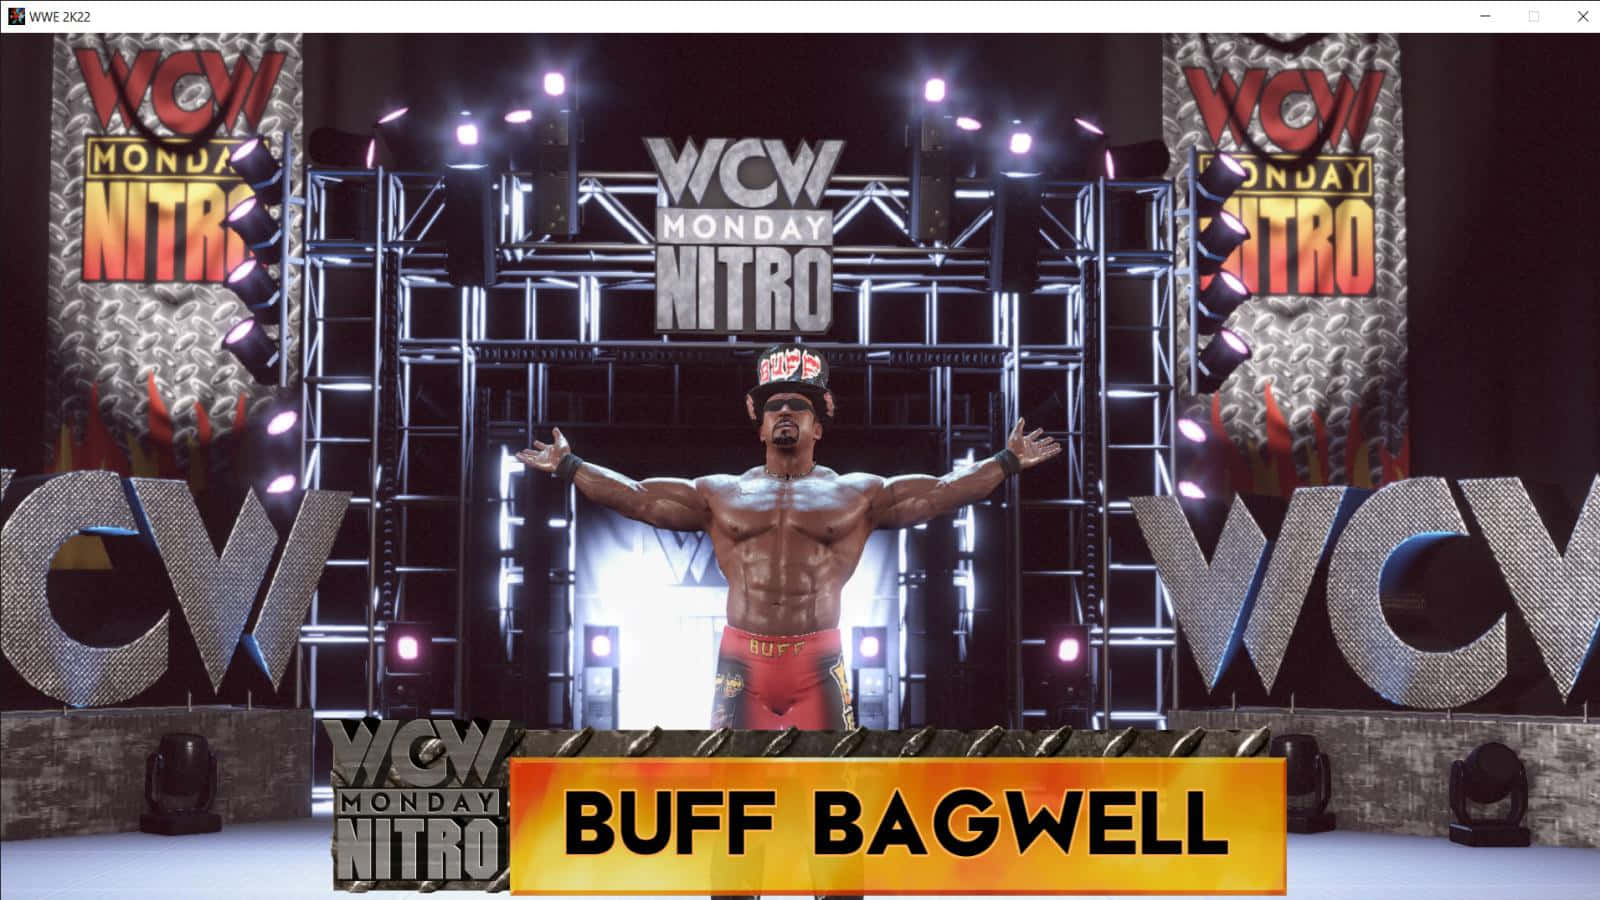 Fotografíade Buff Bagwell, Luchador De Wcw Monday Nitro. Fondo de pantalla